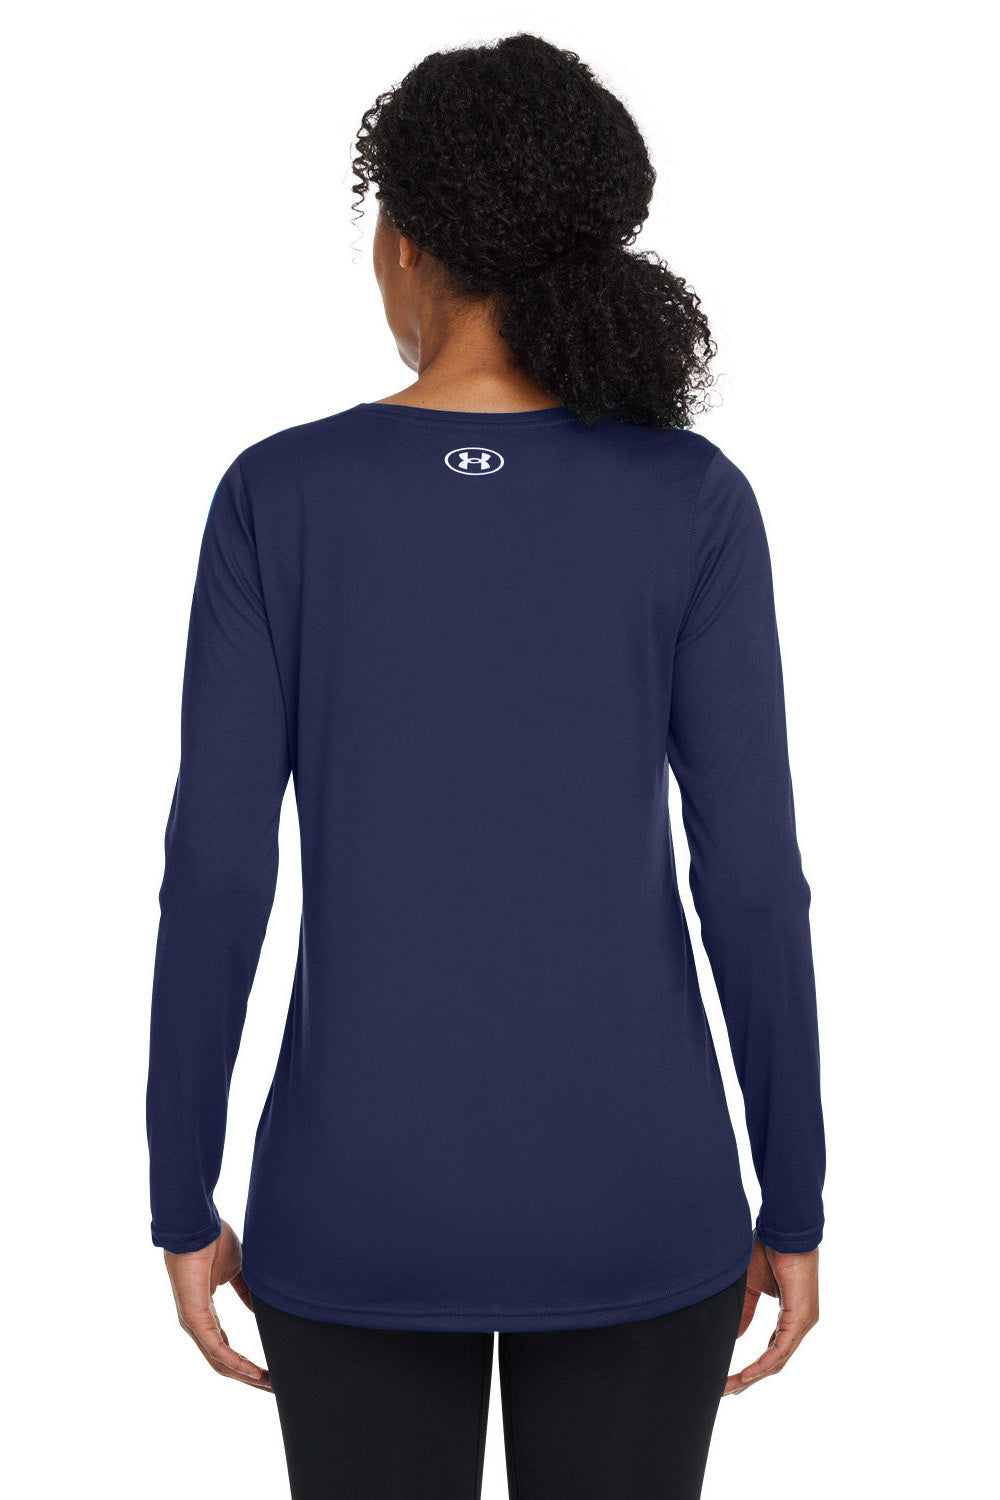 Under Armour 1376852 Womens Team Tech Moisture Wicking Long Sleeve Crewneck T-Shirt Midnight Navy Blue Model Back